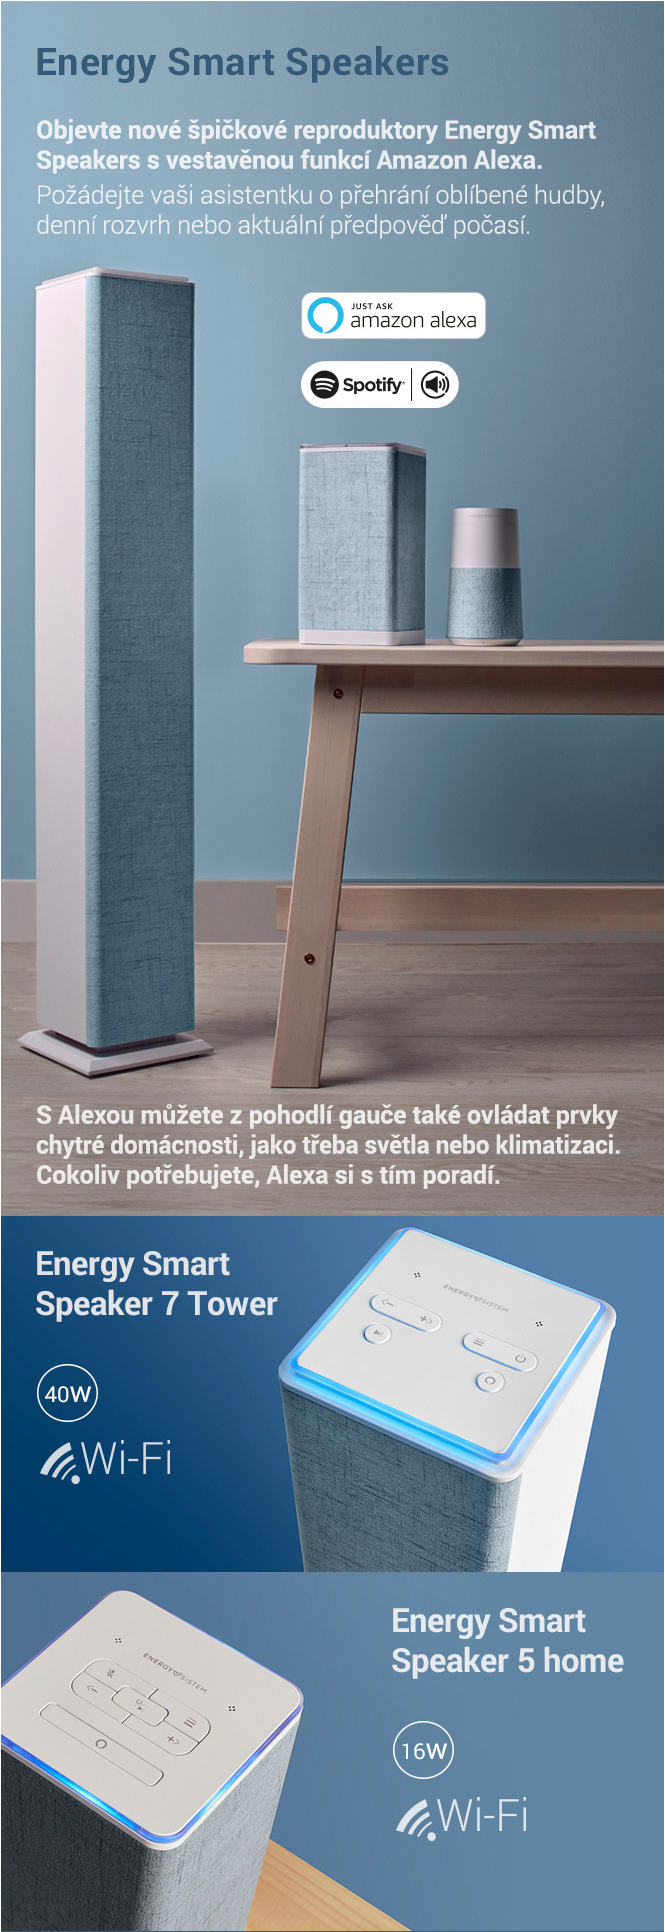 energy smart speakers full